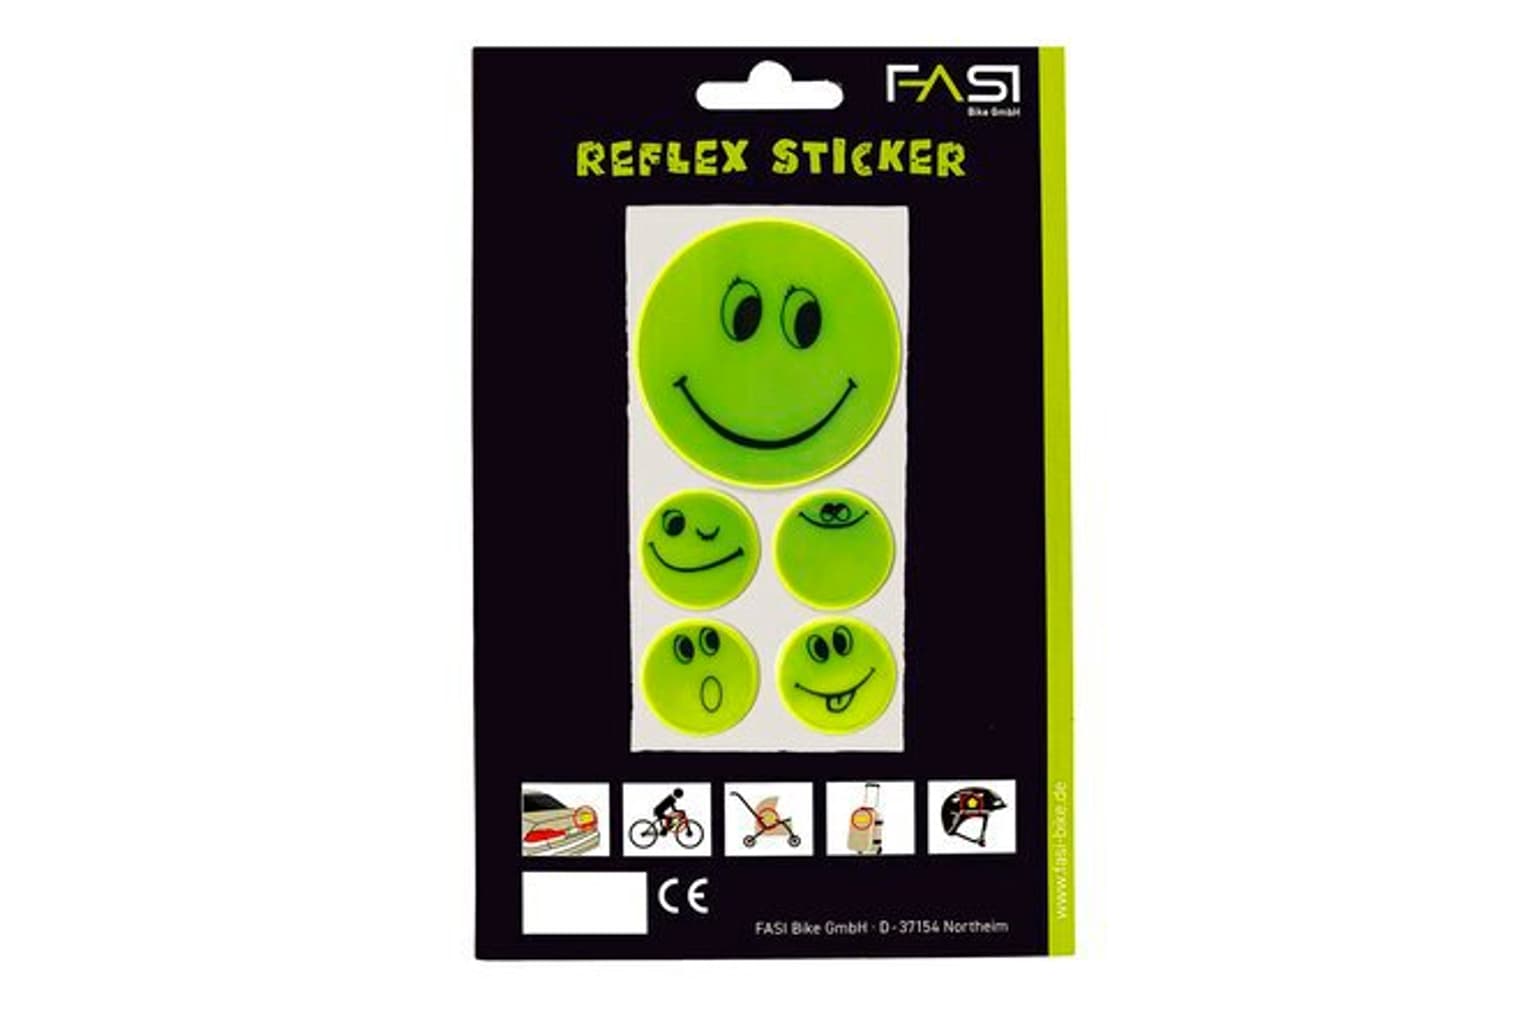 FASI FASI FASI Reflex-Sticker Smileys Reflektor 1